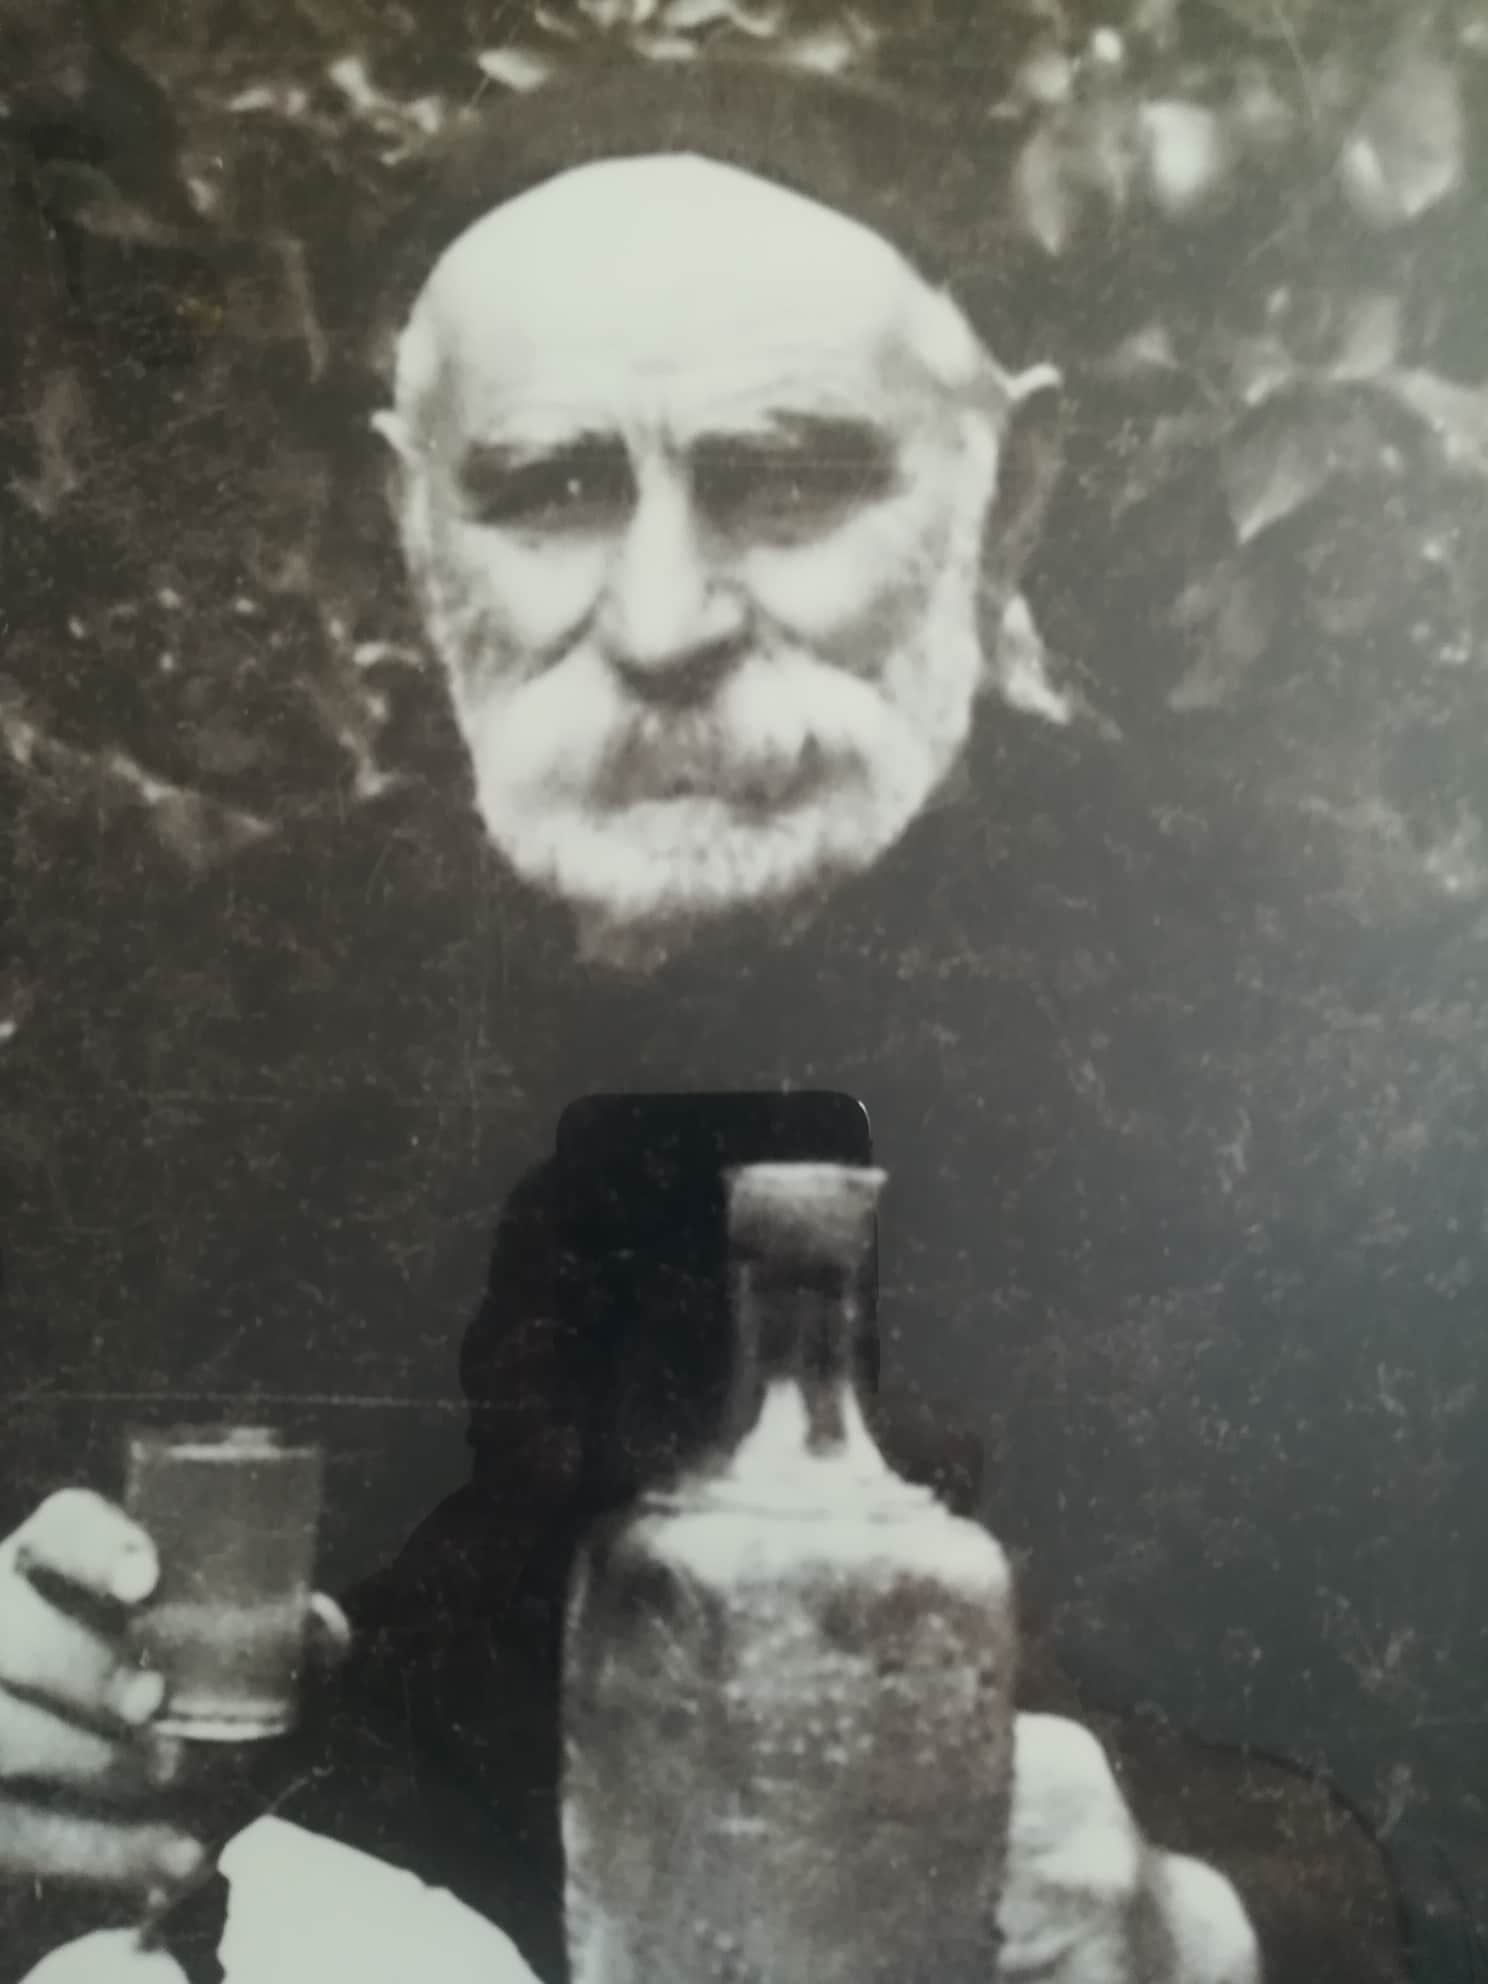 ერასტი ჯამლურიძე (1875-1962) თუშეთის უკანასკნელი მამასახლისი ხისო, ომალო, თუშეთი. ლევან ჯამლურიძისგან (შვილისშვილი)